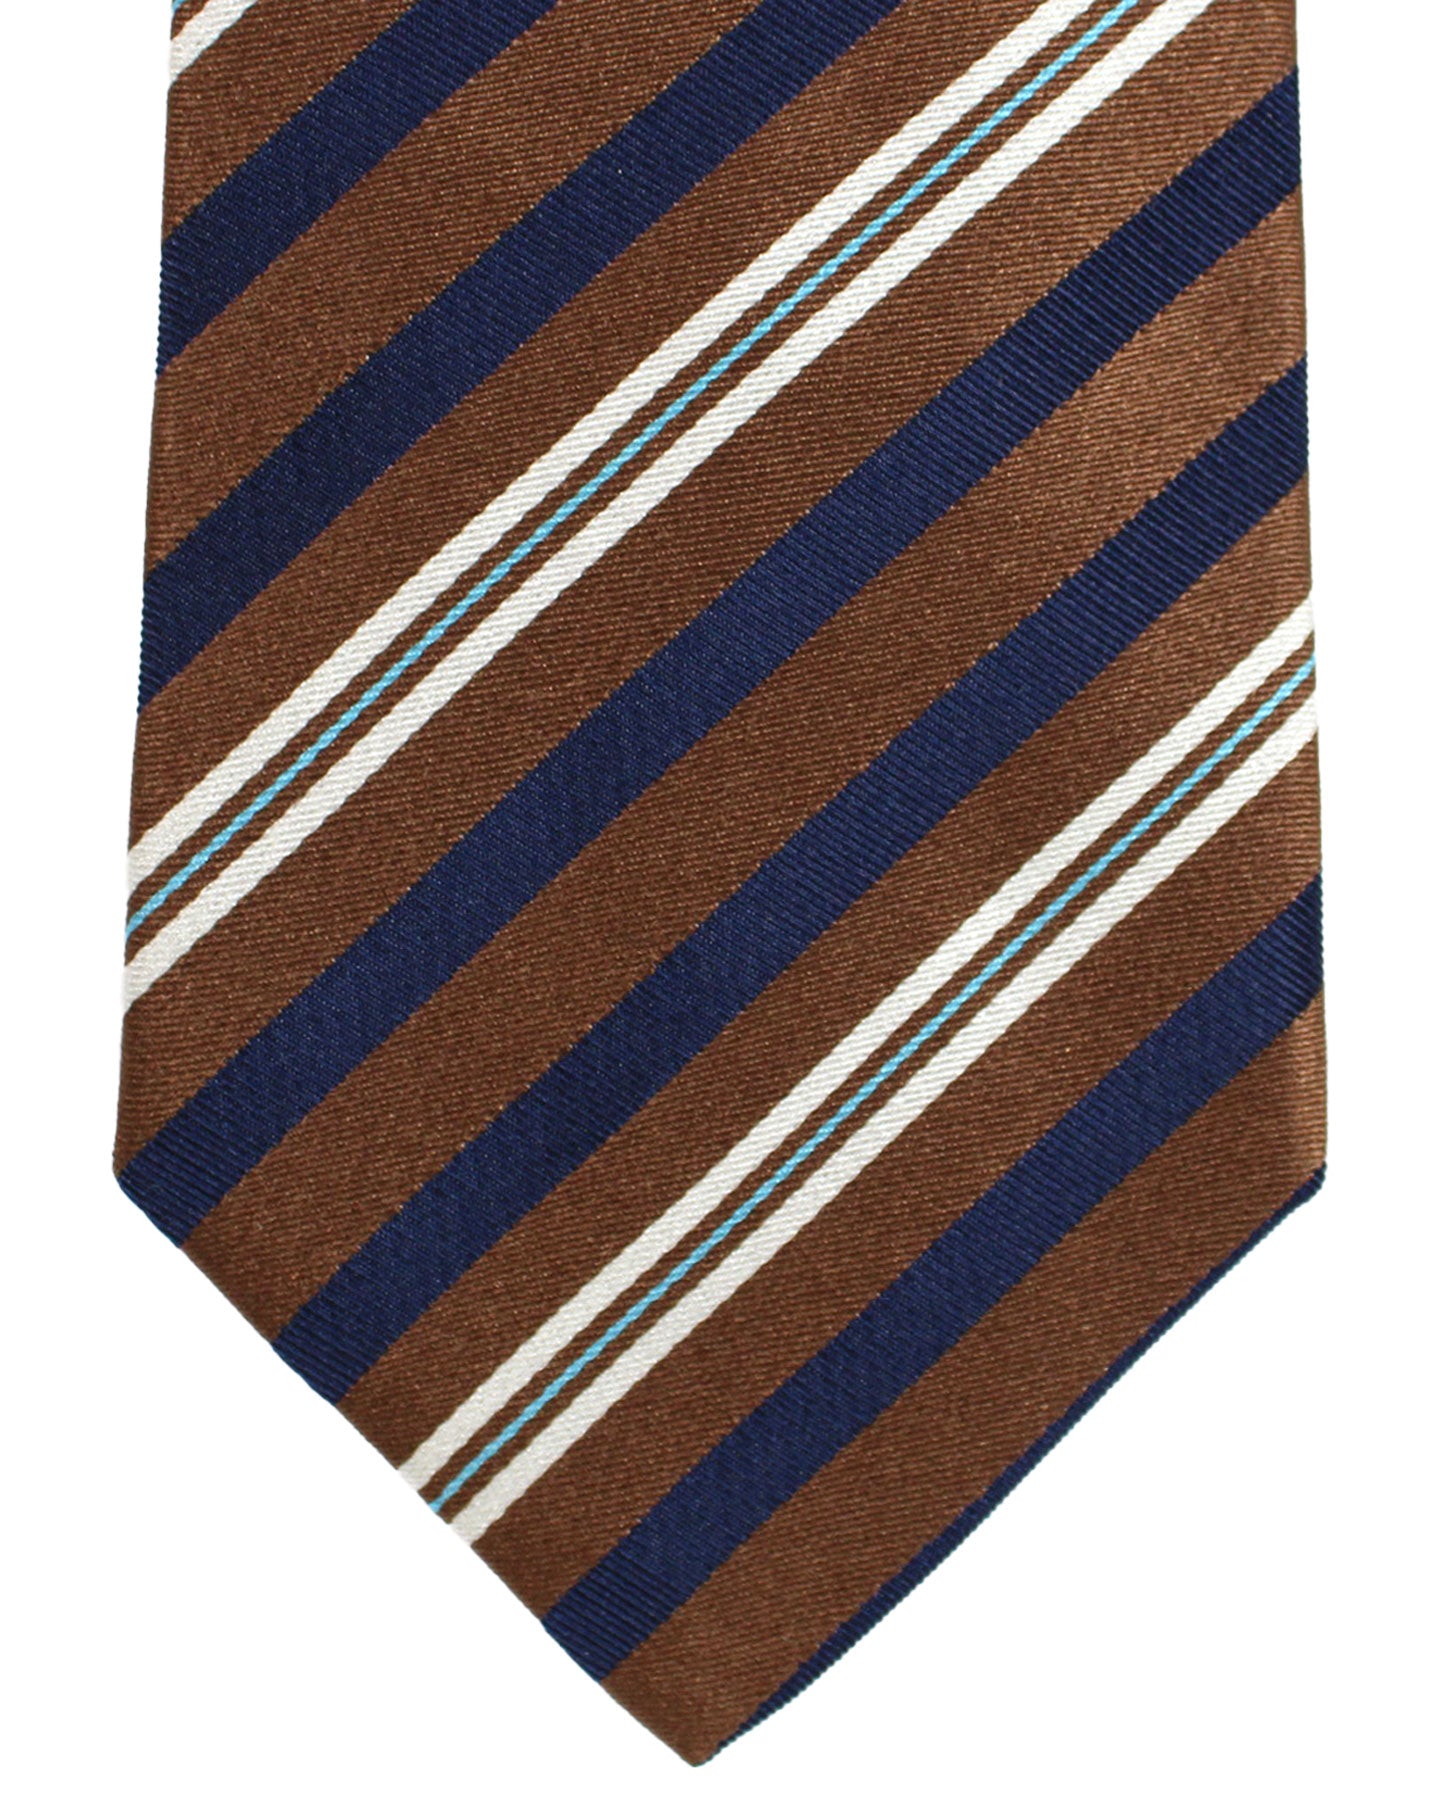 Luigi Borrelli Unlined Tie Brown Dark Navy Stripes Design